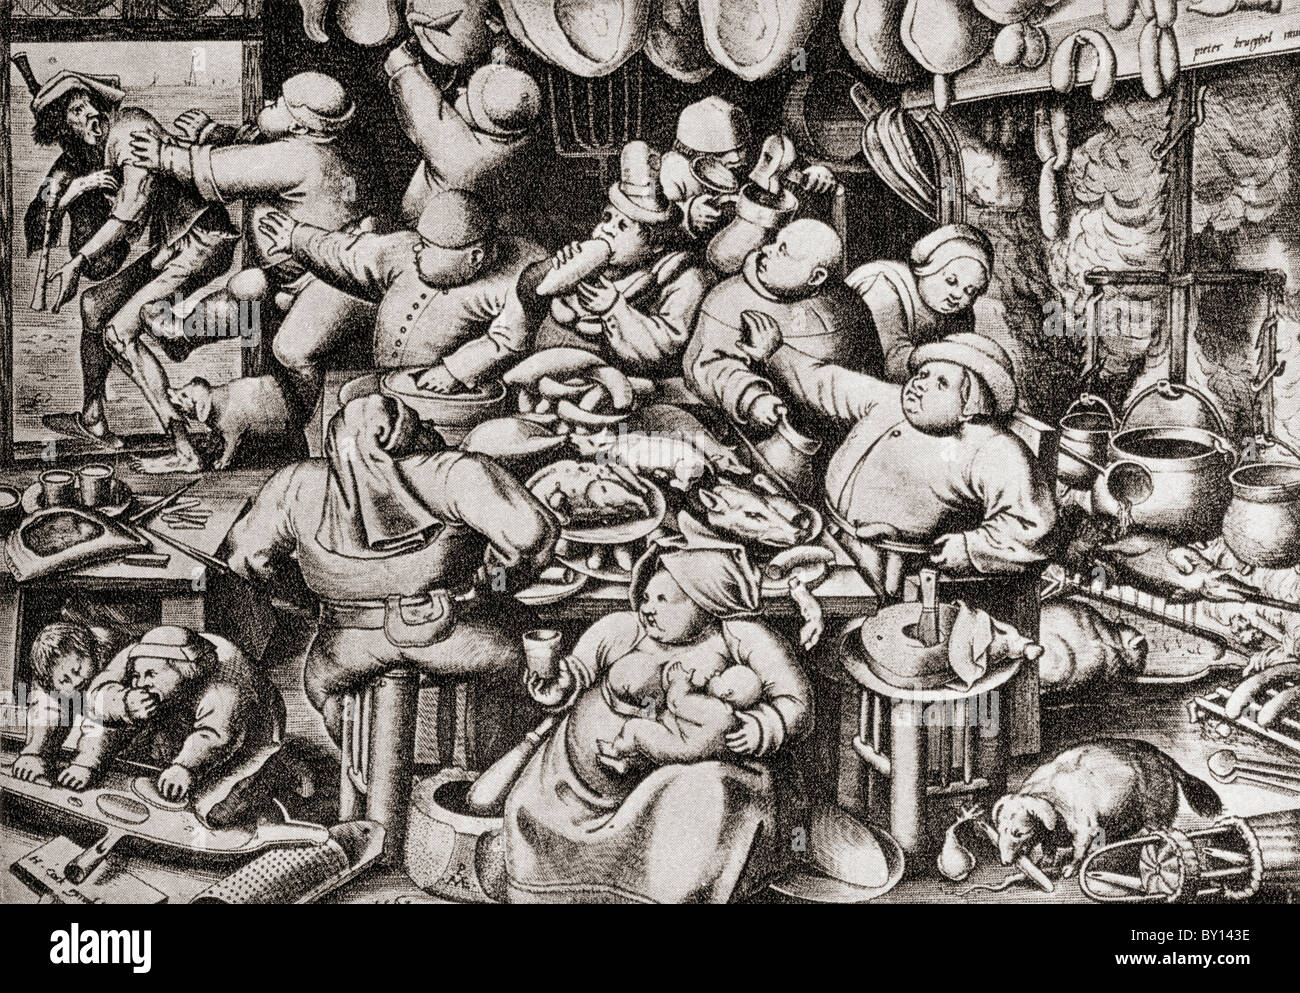 Mendigo expulsado de un hombre rico's Kitchen, en el siglo XVII. Foto de stock